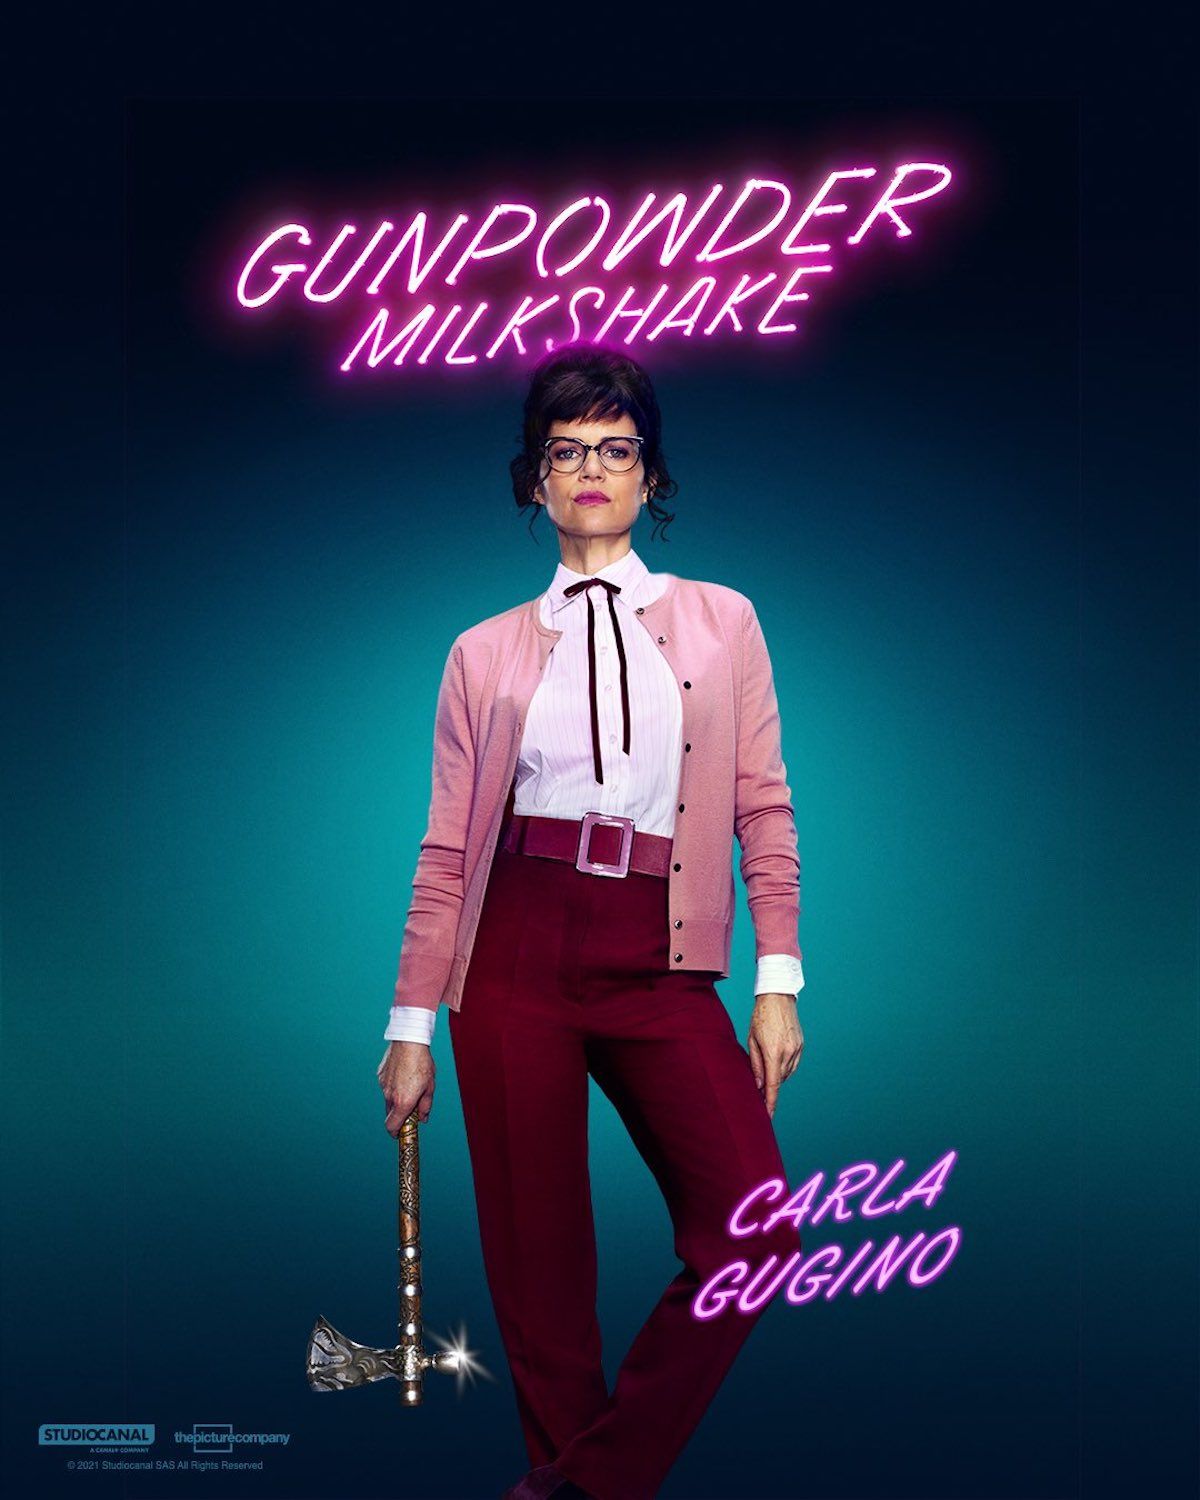 gunpowder-milkshake-carla-gugino-poster